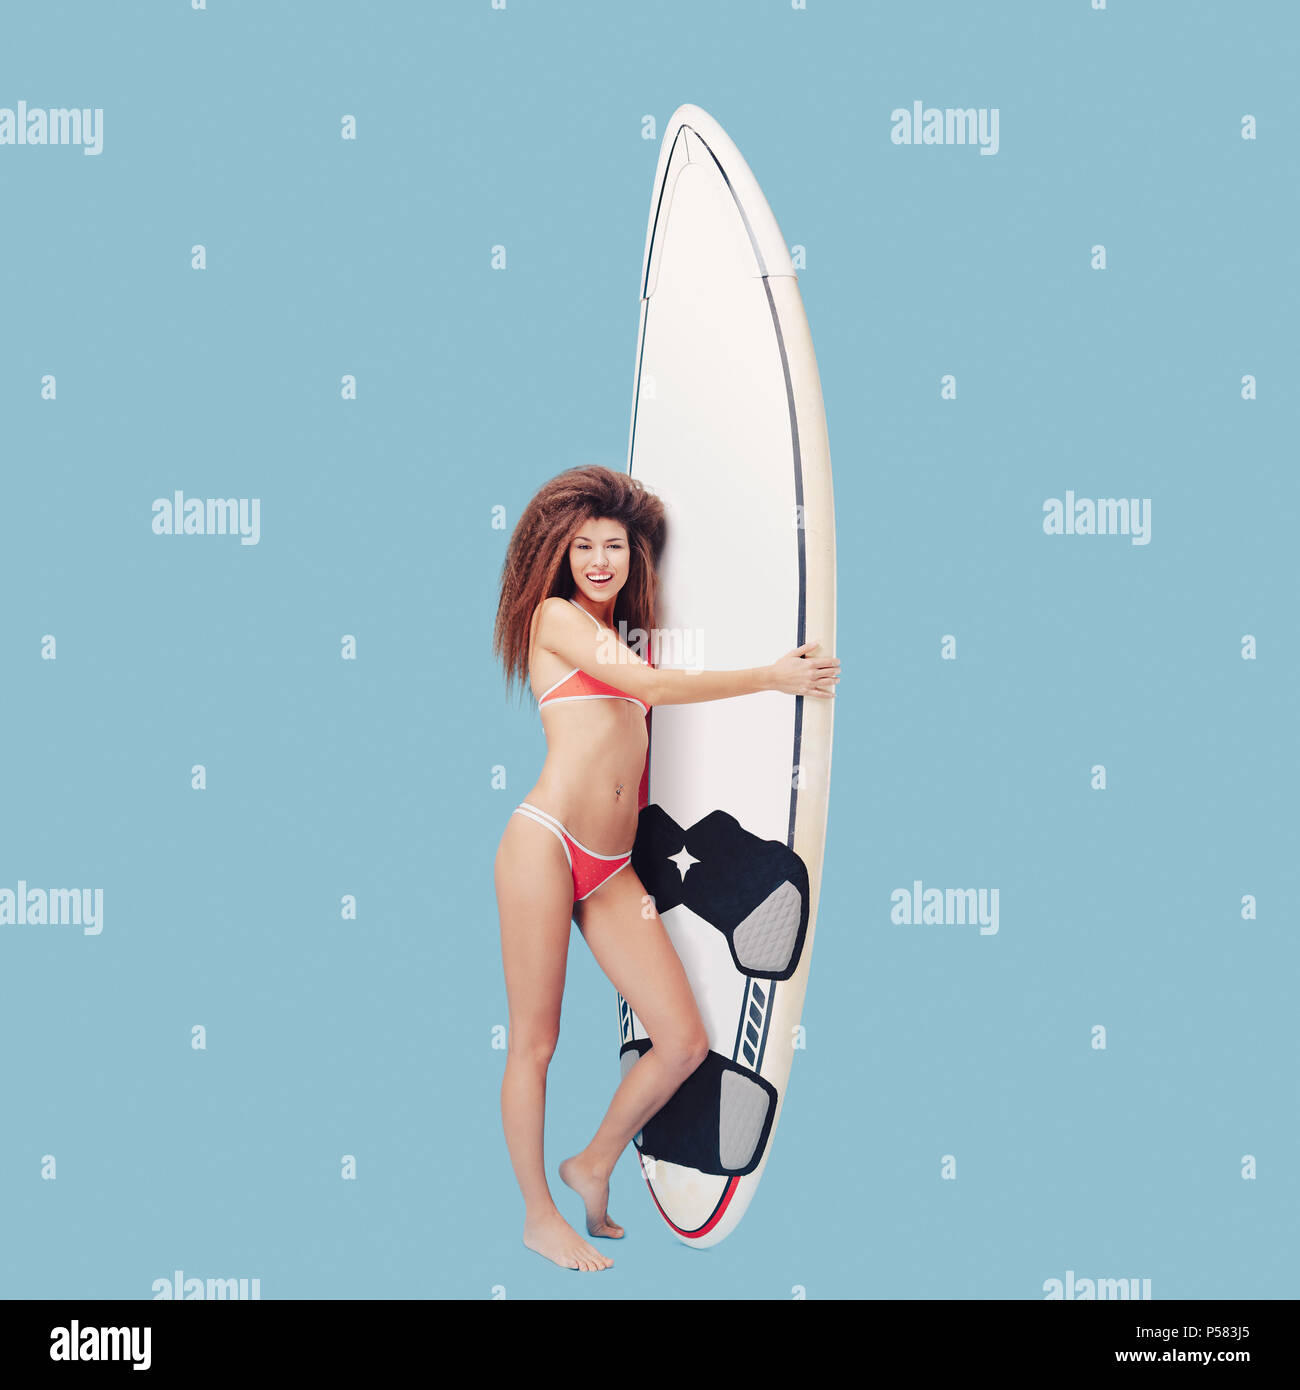 Profiter de la vie surfer girl Banque D'Images